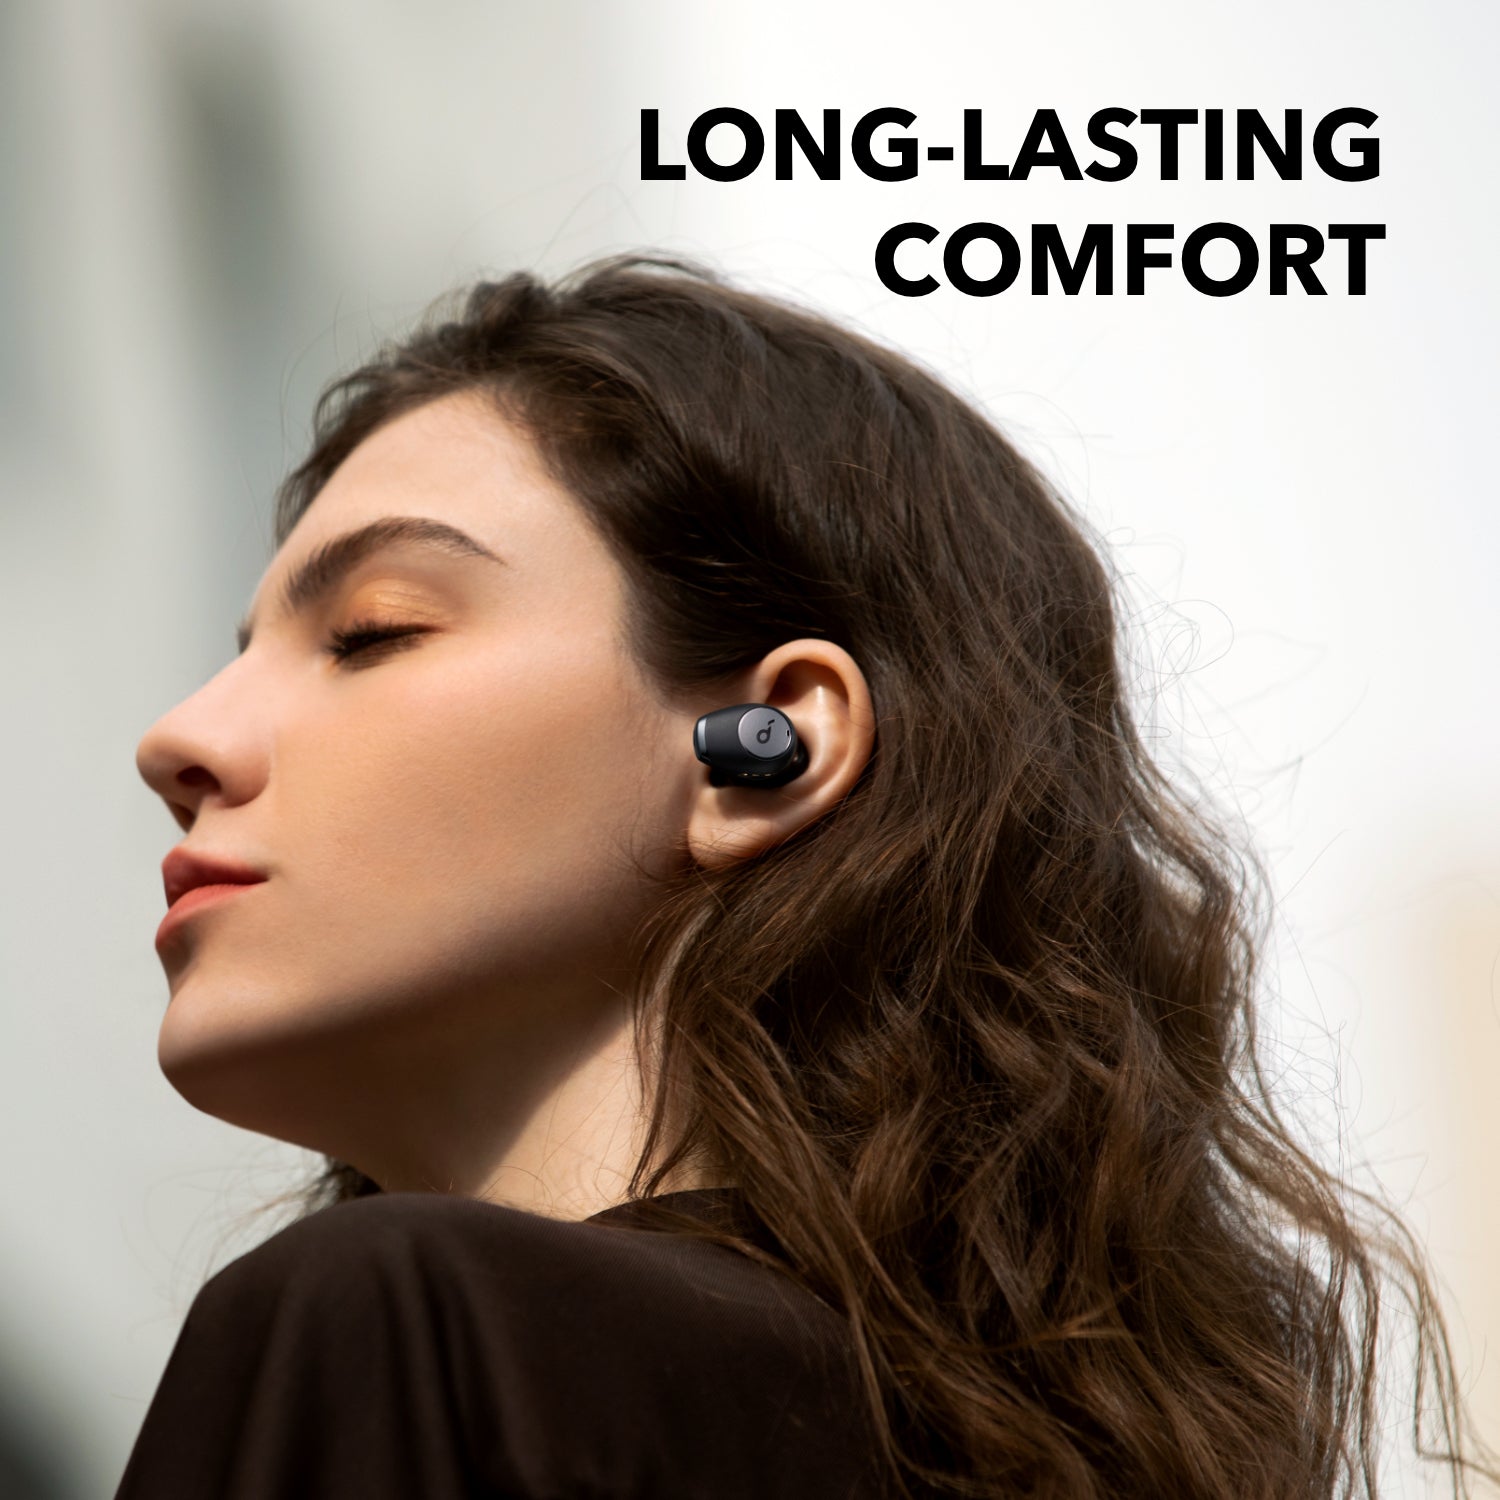 Casque sans fil - Anker soundcore life 2 neo - Environ 60 heures  d'autonomie - Bluetooth V5.0 - 06 mois